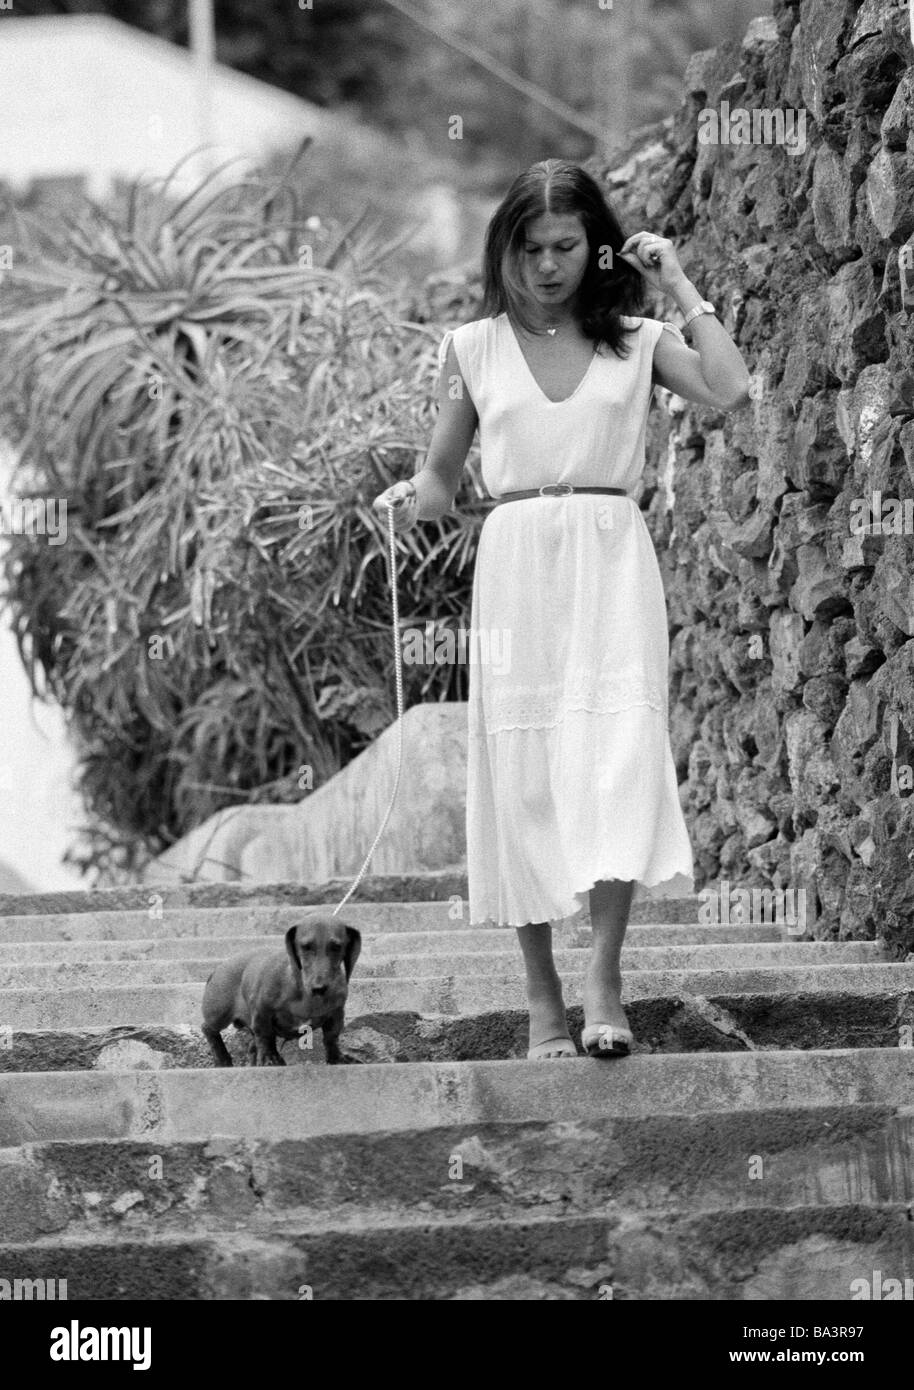 Années 1980, photo en noir et blanc, de l'homme et des animaux, les jeunes femme entre un teckel en laisse, âgés de 25 à 35 ans, chien domestique, Canis lupus familiaris, Espagne, Îles Canaries, Tenerife, Puerto de la Cruz Banque D'Images